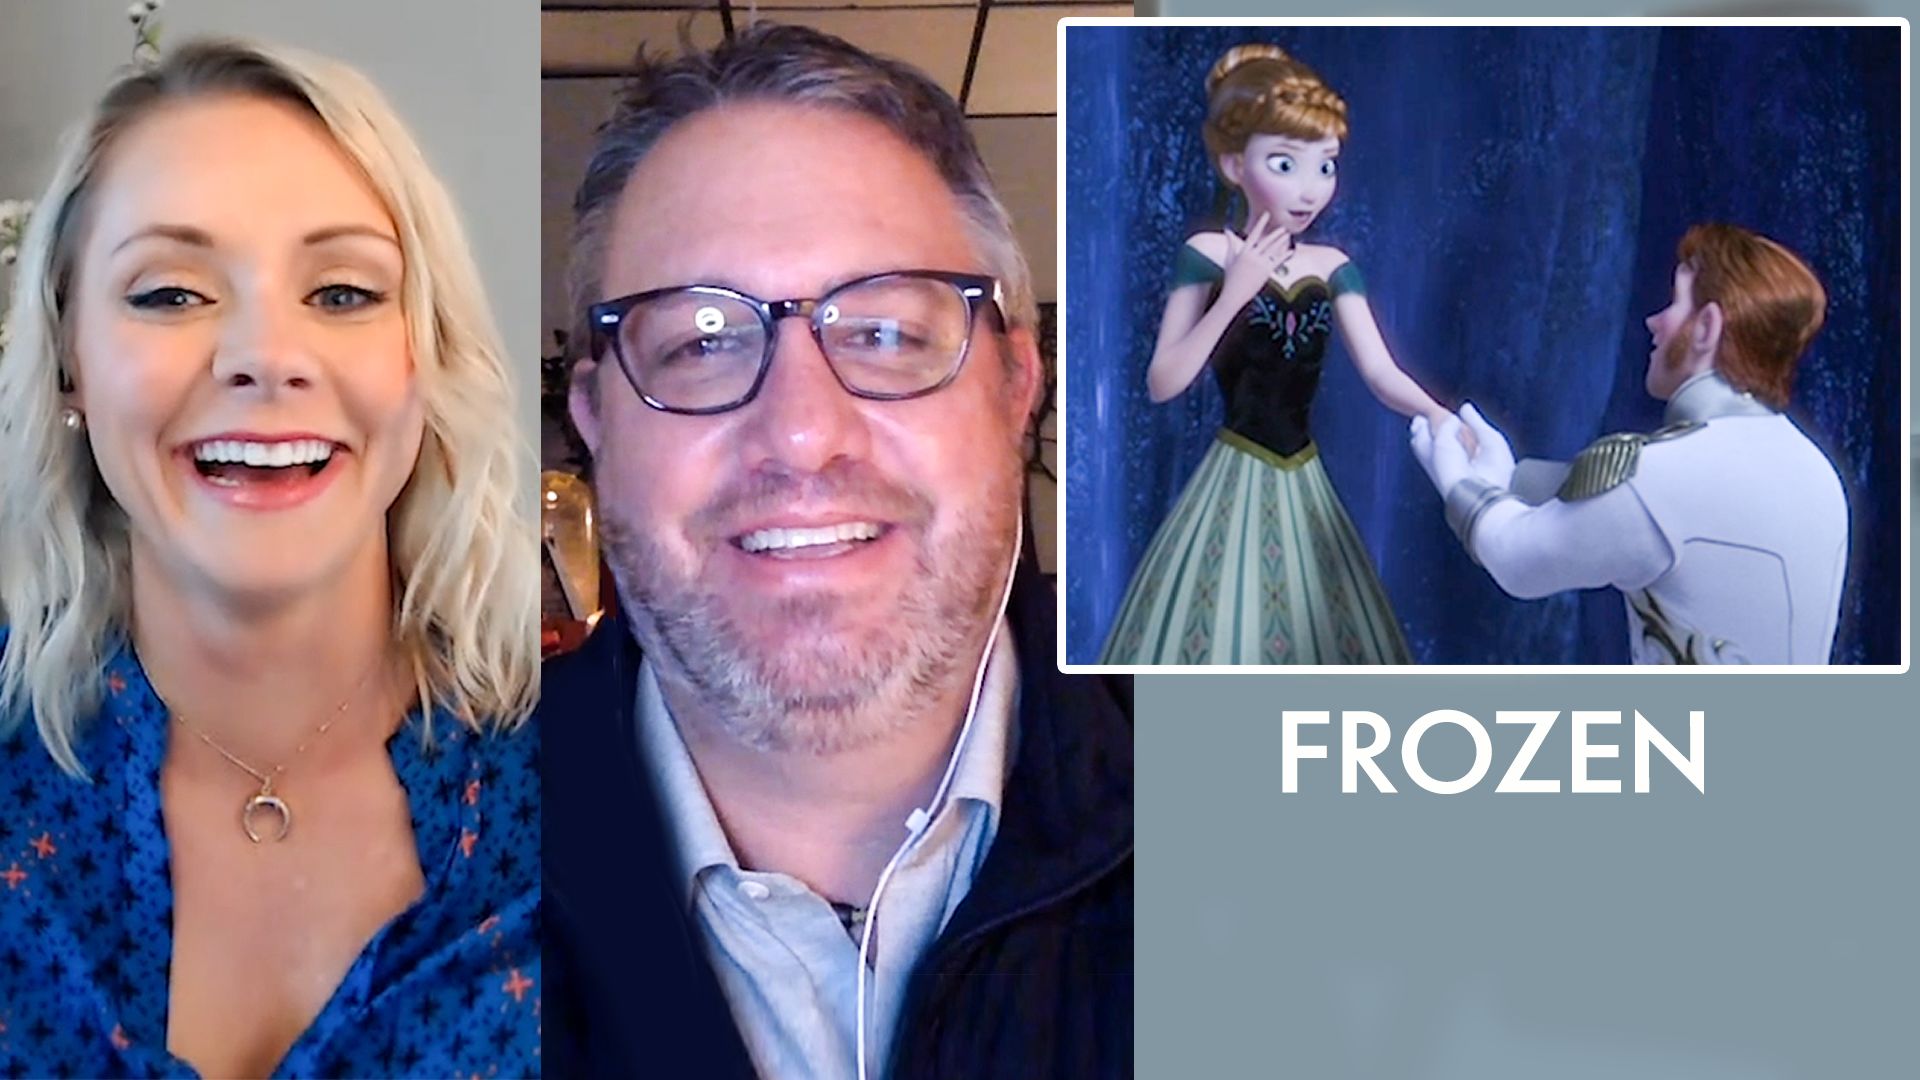 Elsa in 'Frozen' Is a Disney Queen for Anxious Girls